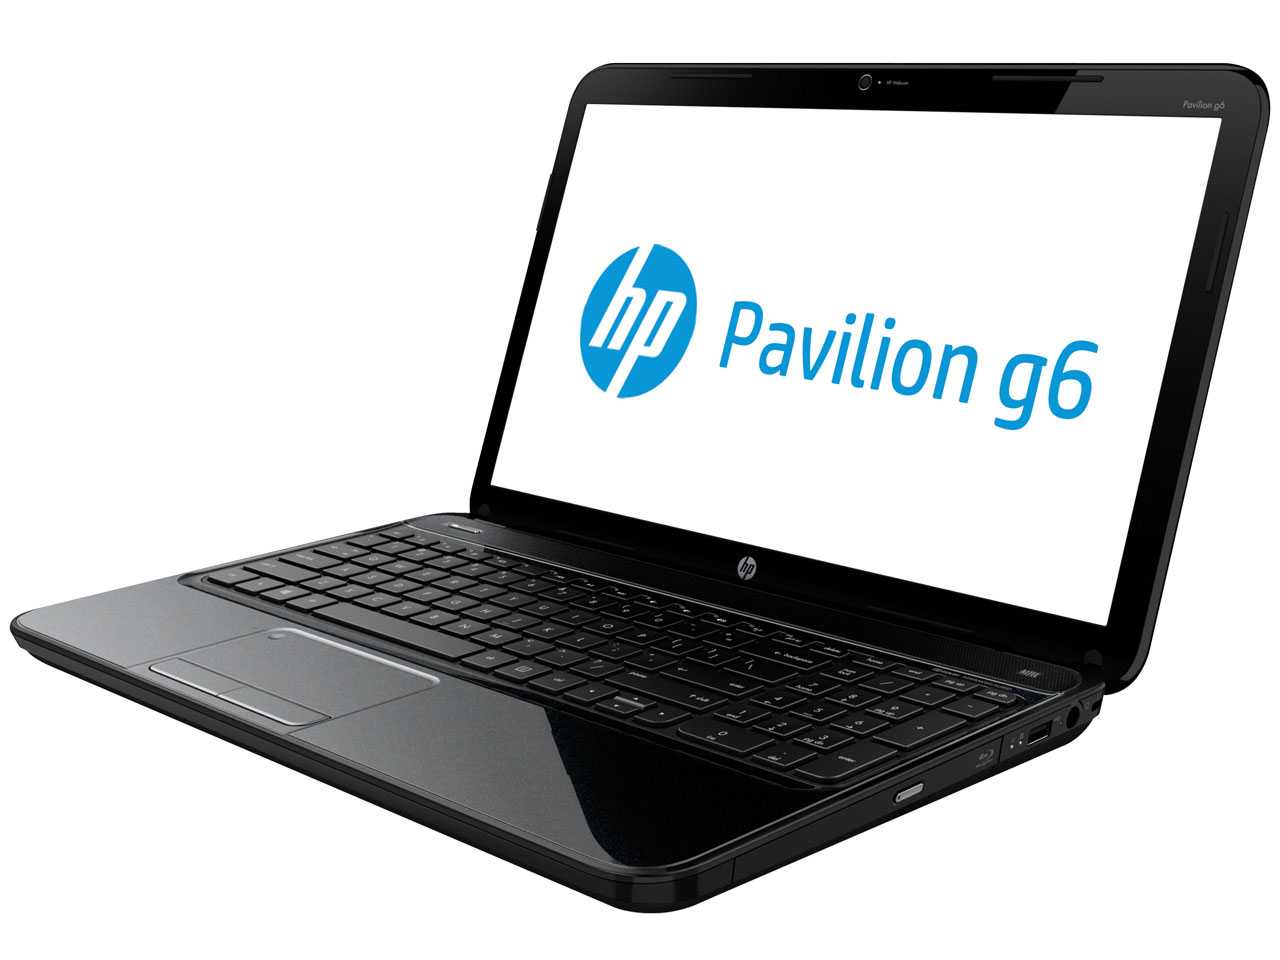 Hp pavilion g6-2322sr (a8 4500m 1900 mhz/15.6"/1366x768/6144mb/750gb/dvd-rw/wi-fi/bluetooth/win 8 64) (d2f39ea) (черный) - купить , скидки, цена, отзывы, обзор, характеристики - ноутбуки